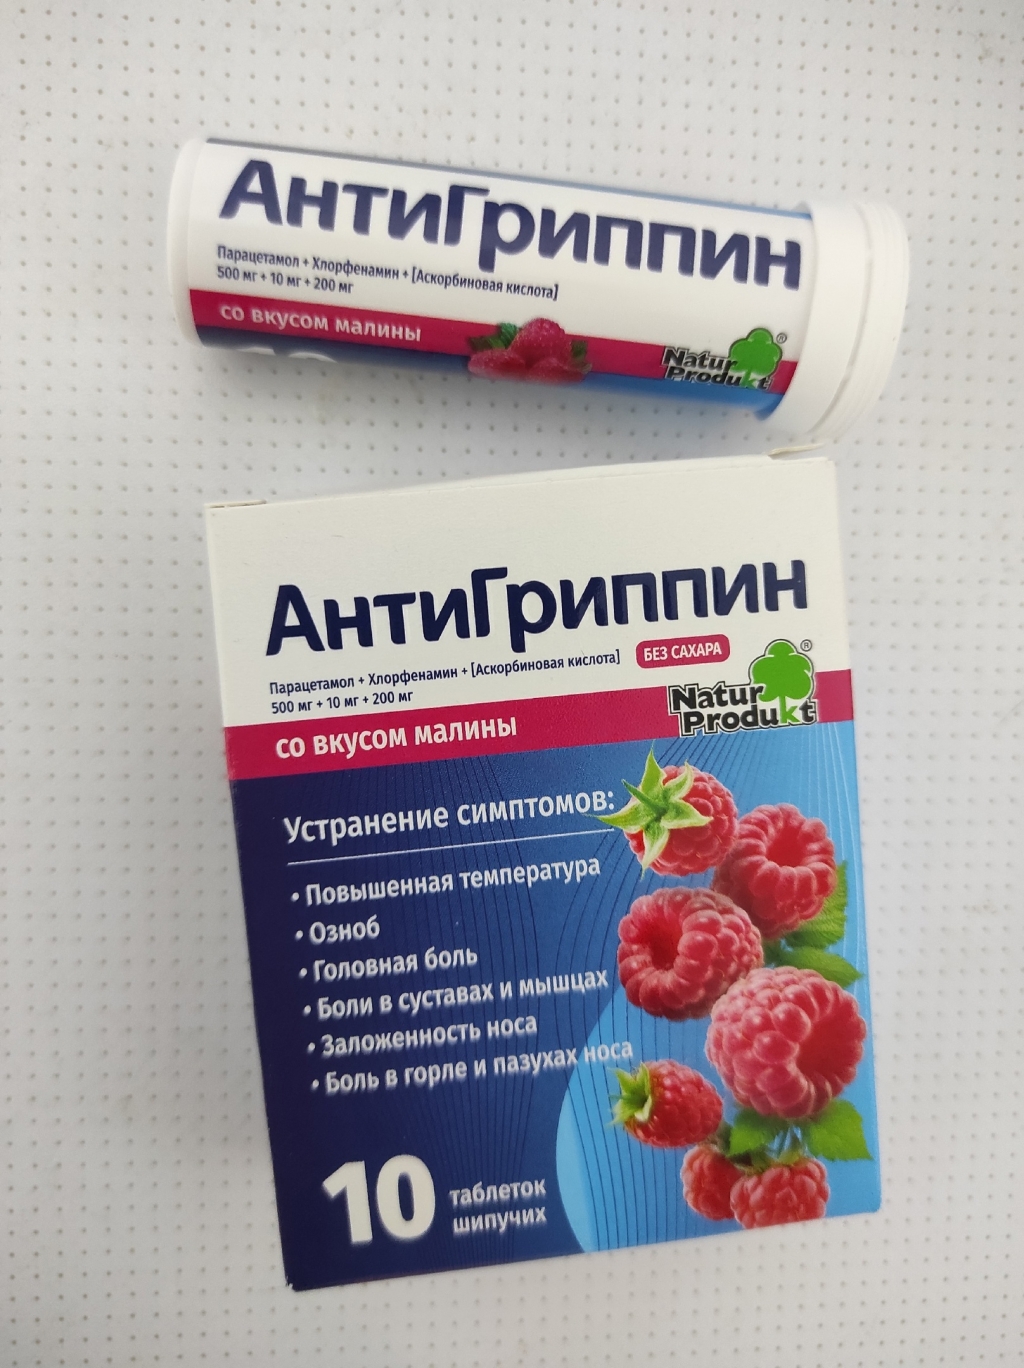 Антигриппин с малиновым вкусом - АнтиГриппин от НатурПродукт замечательное средство!